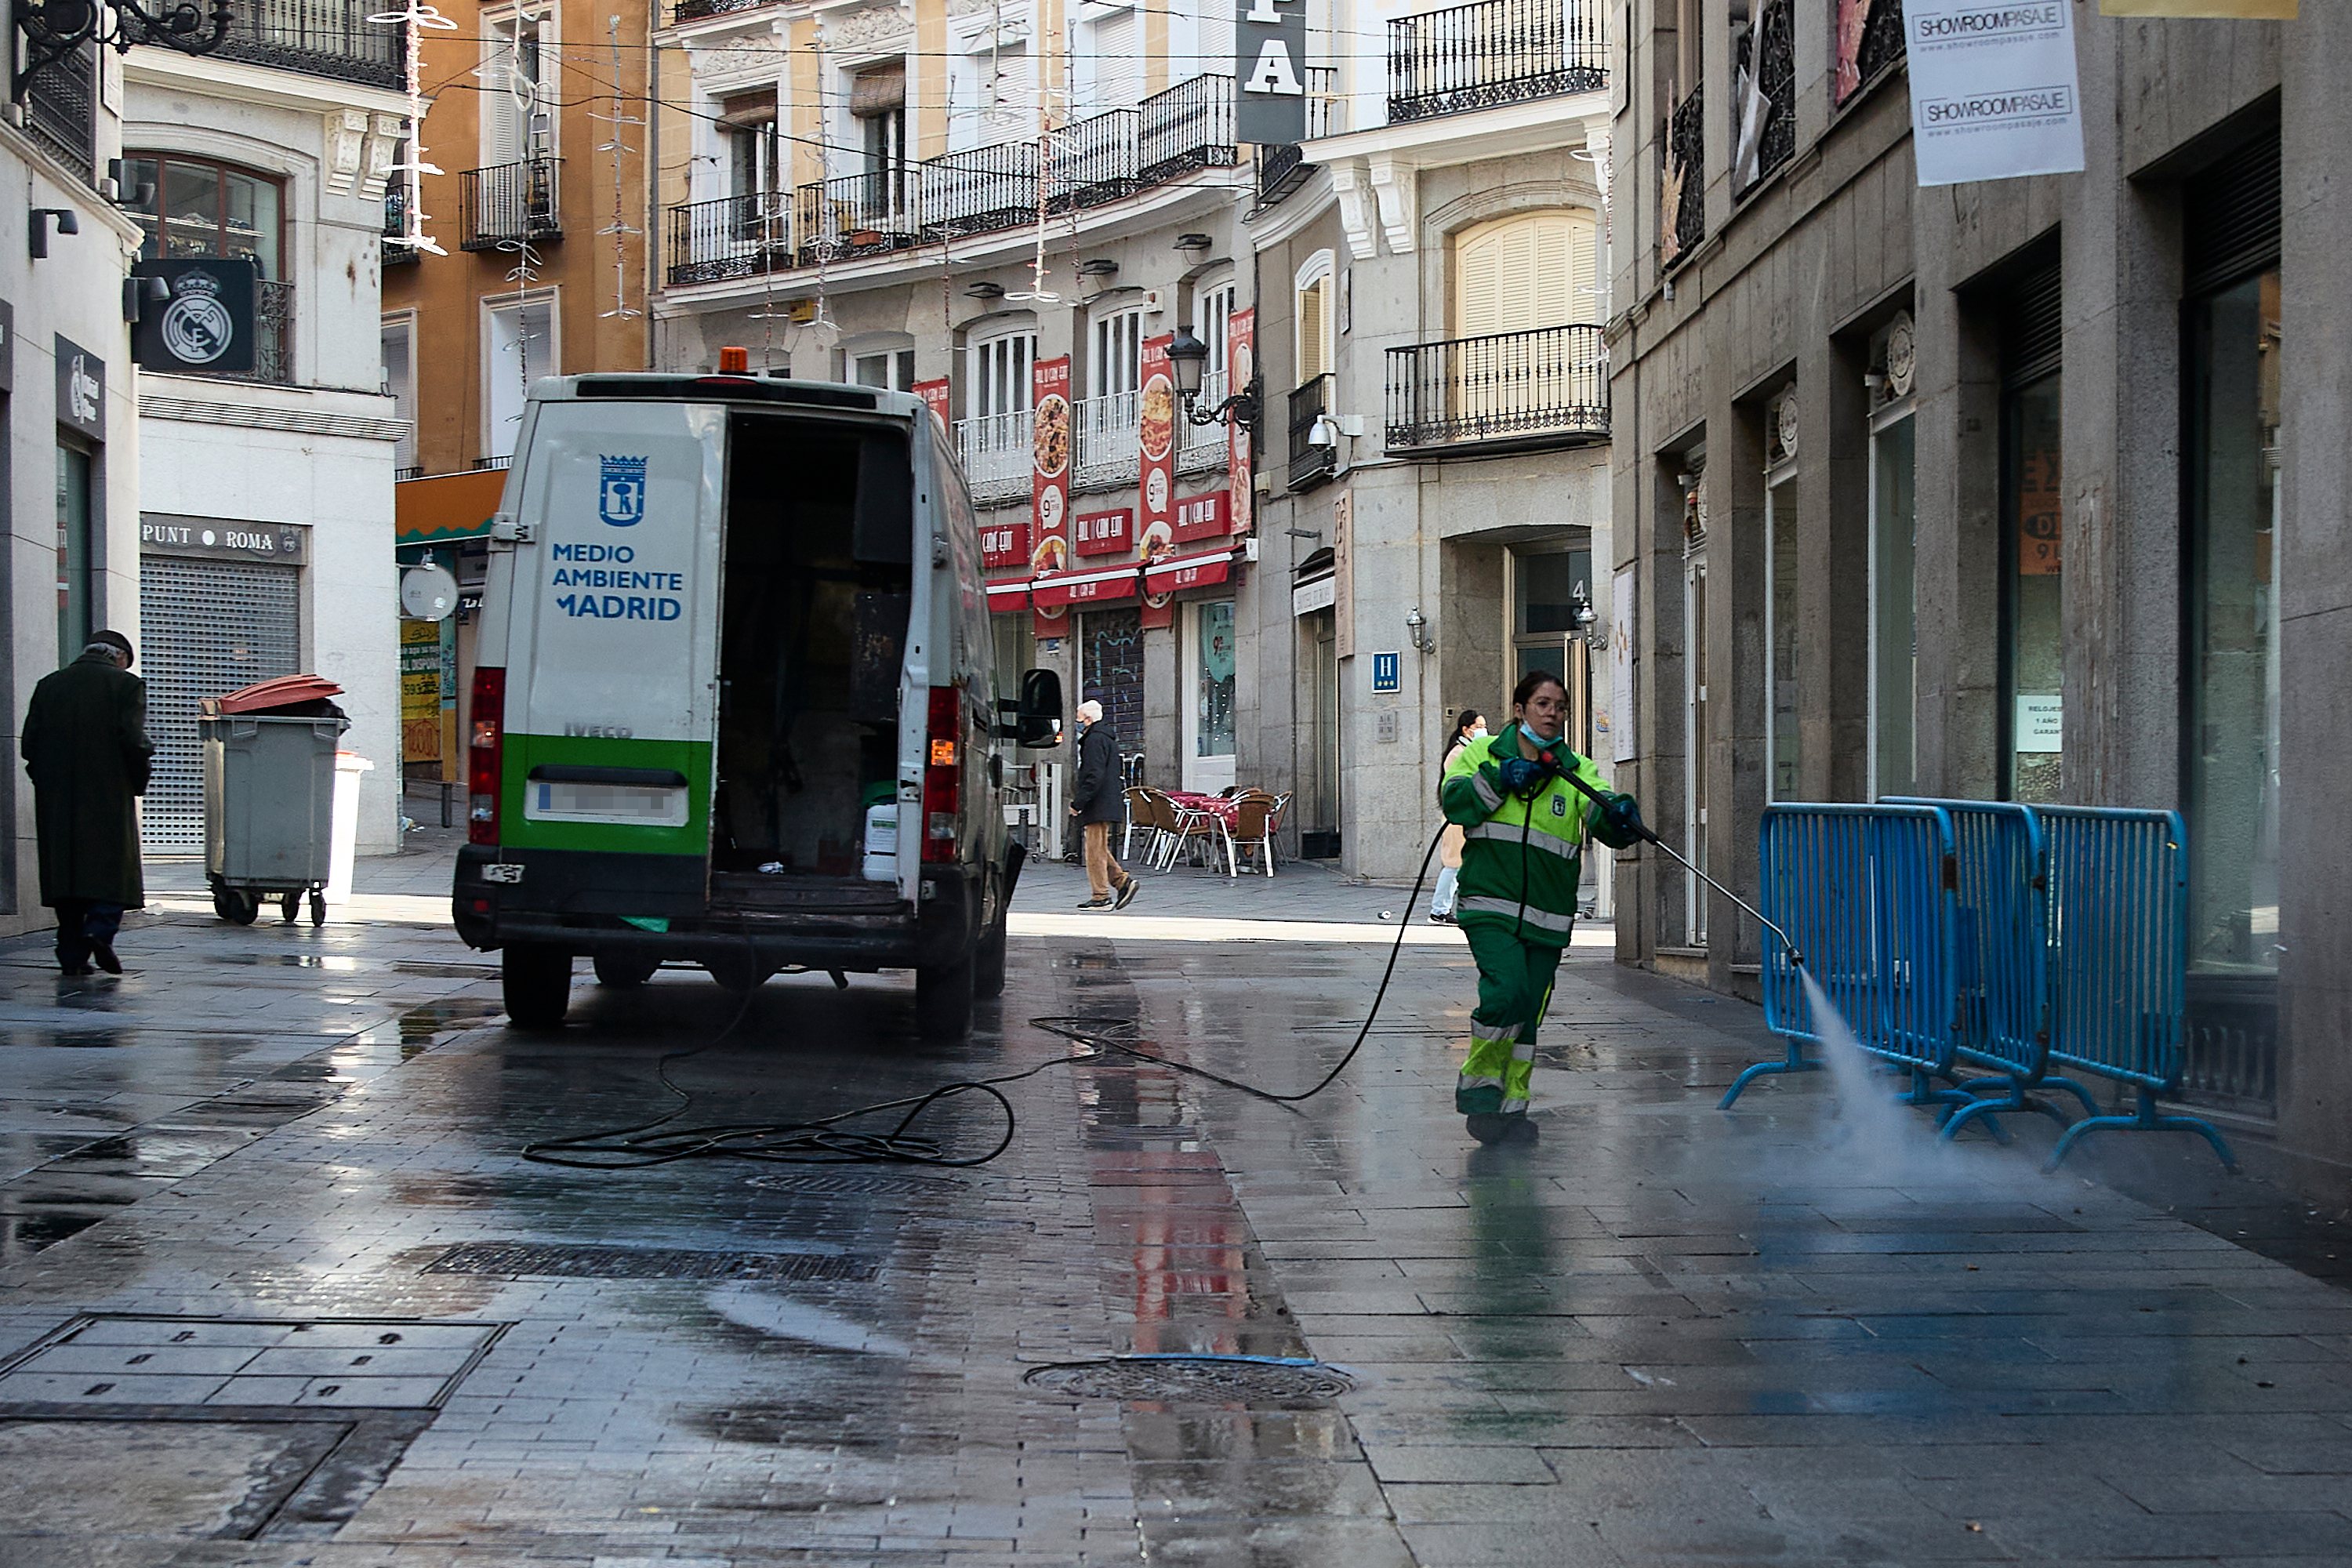 Limpeza das ruas de Madrid em Espanha, no dia 1 de janeiro, depois da Passagem de Ano